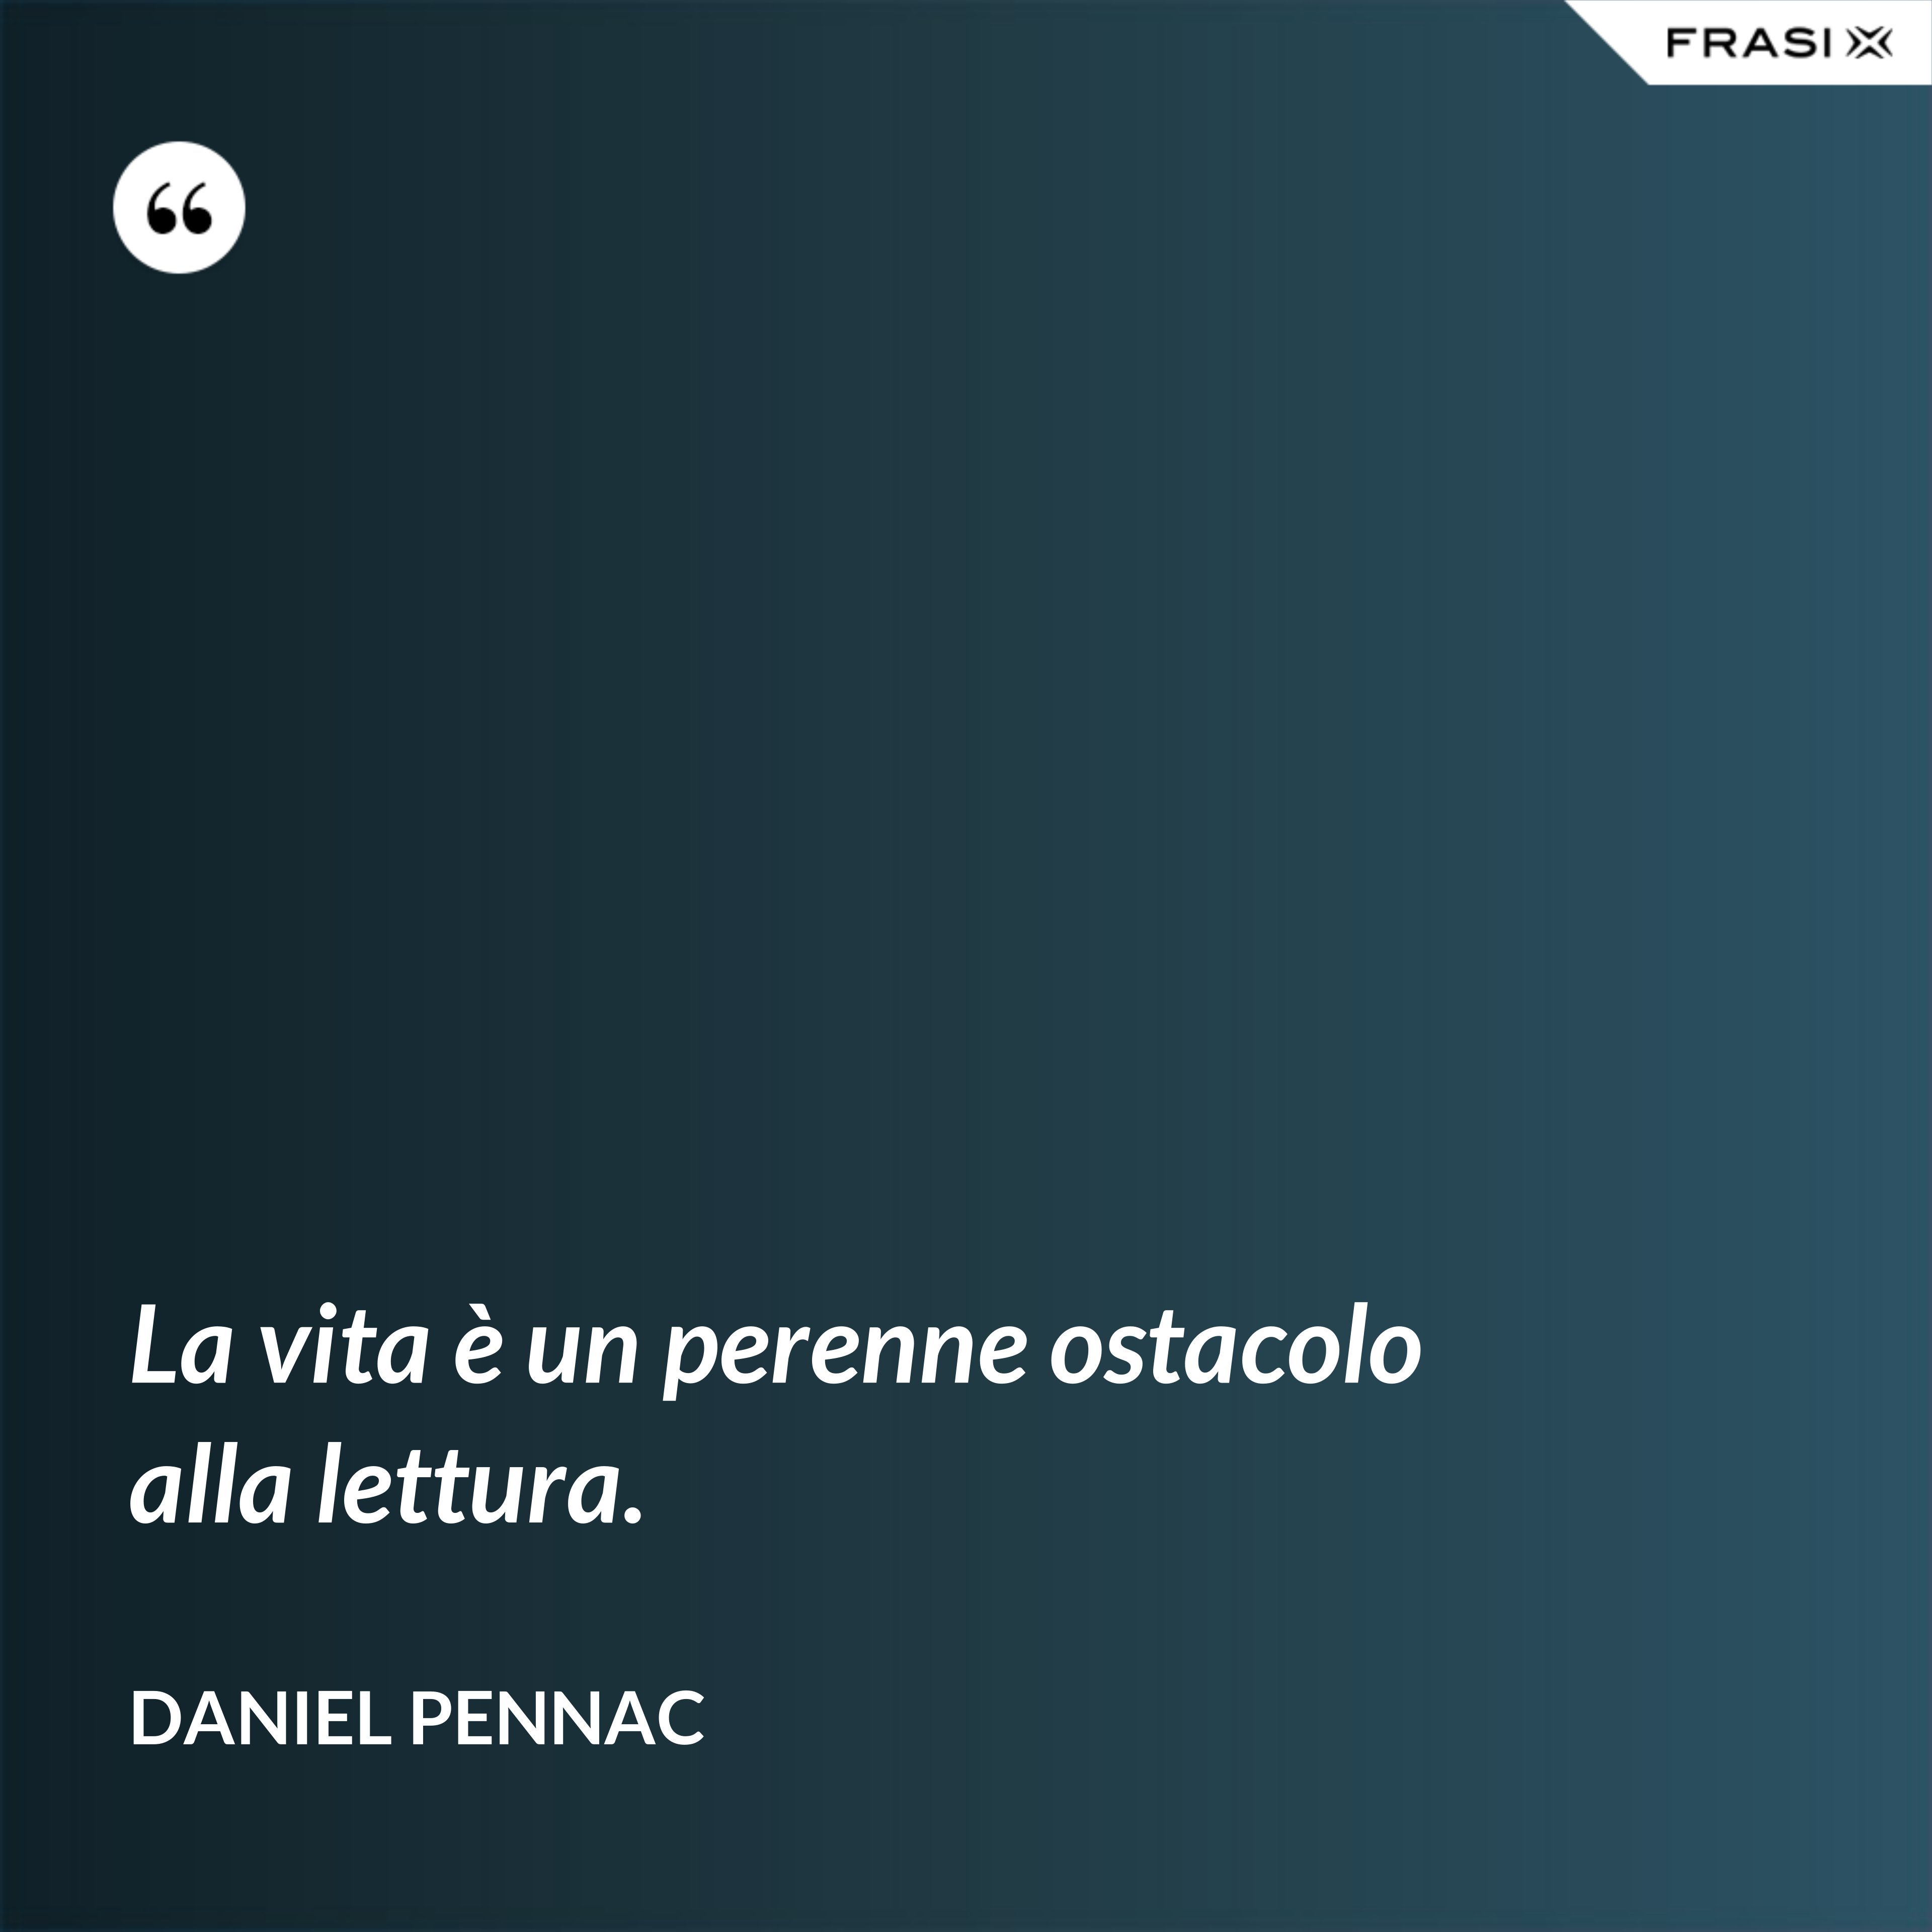 La vita è un perenne ostacolo alla lettura. - Daniel Pennac